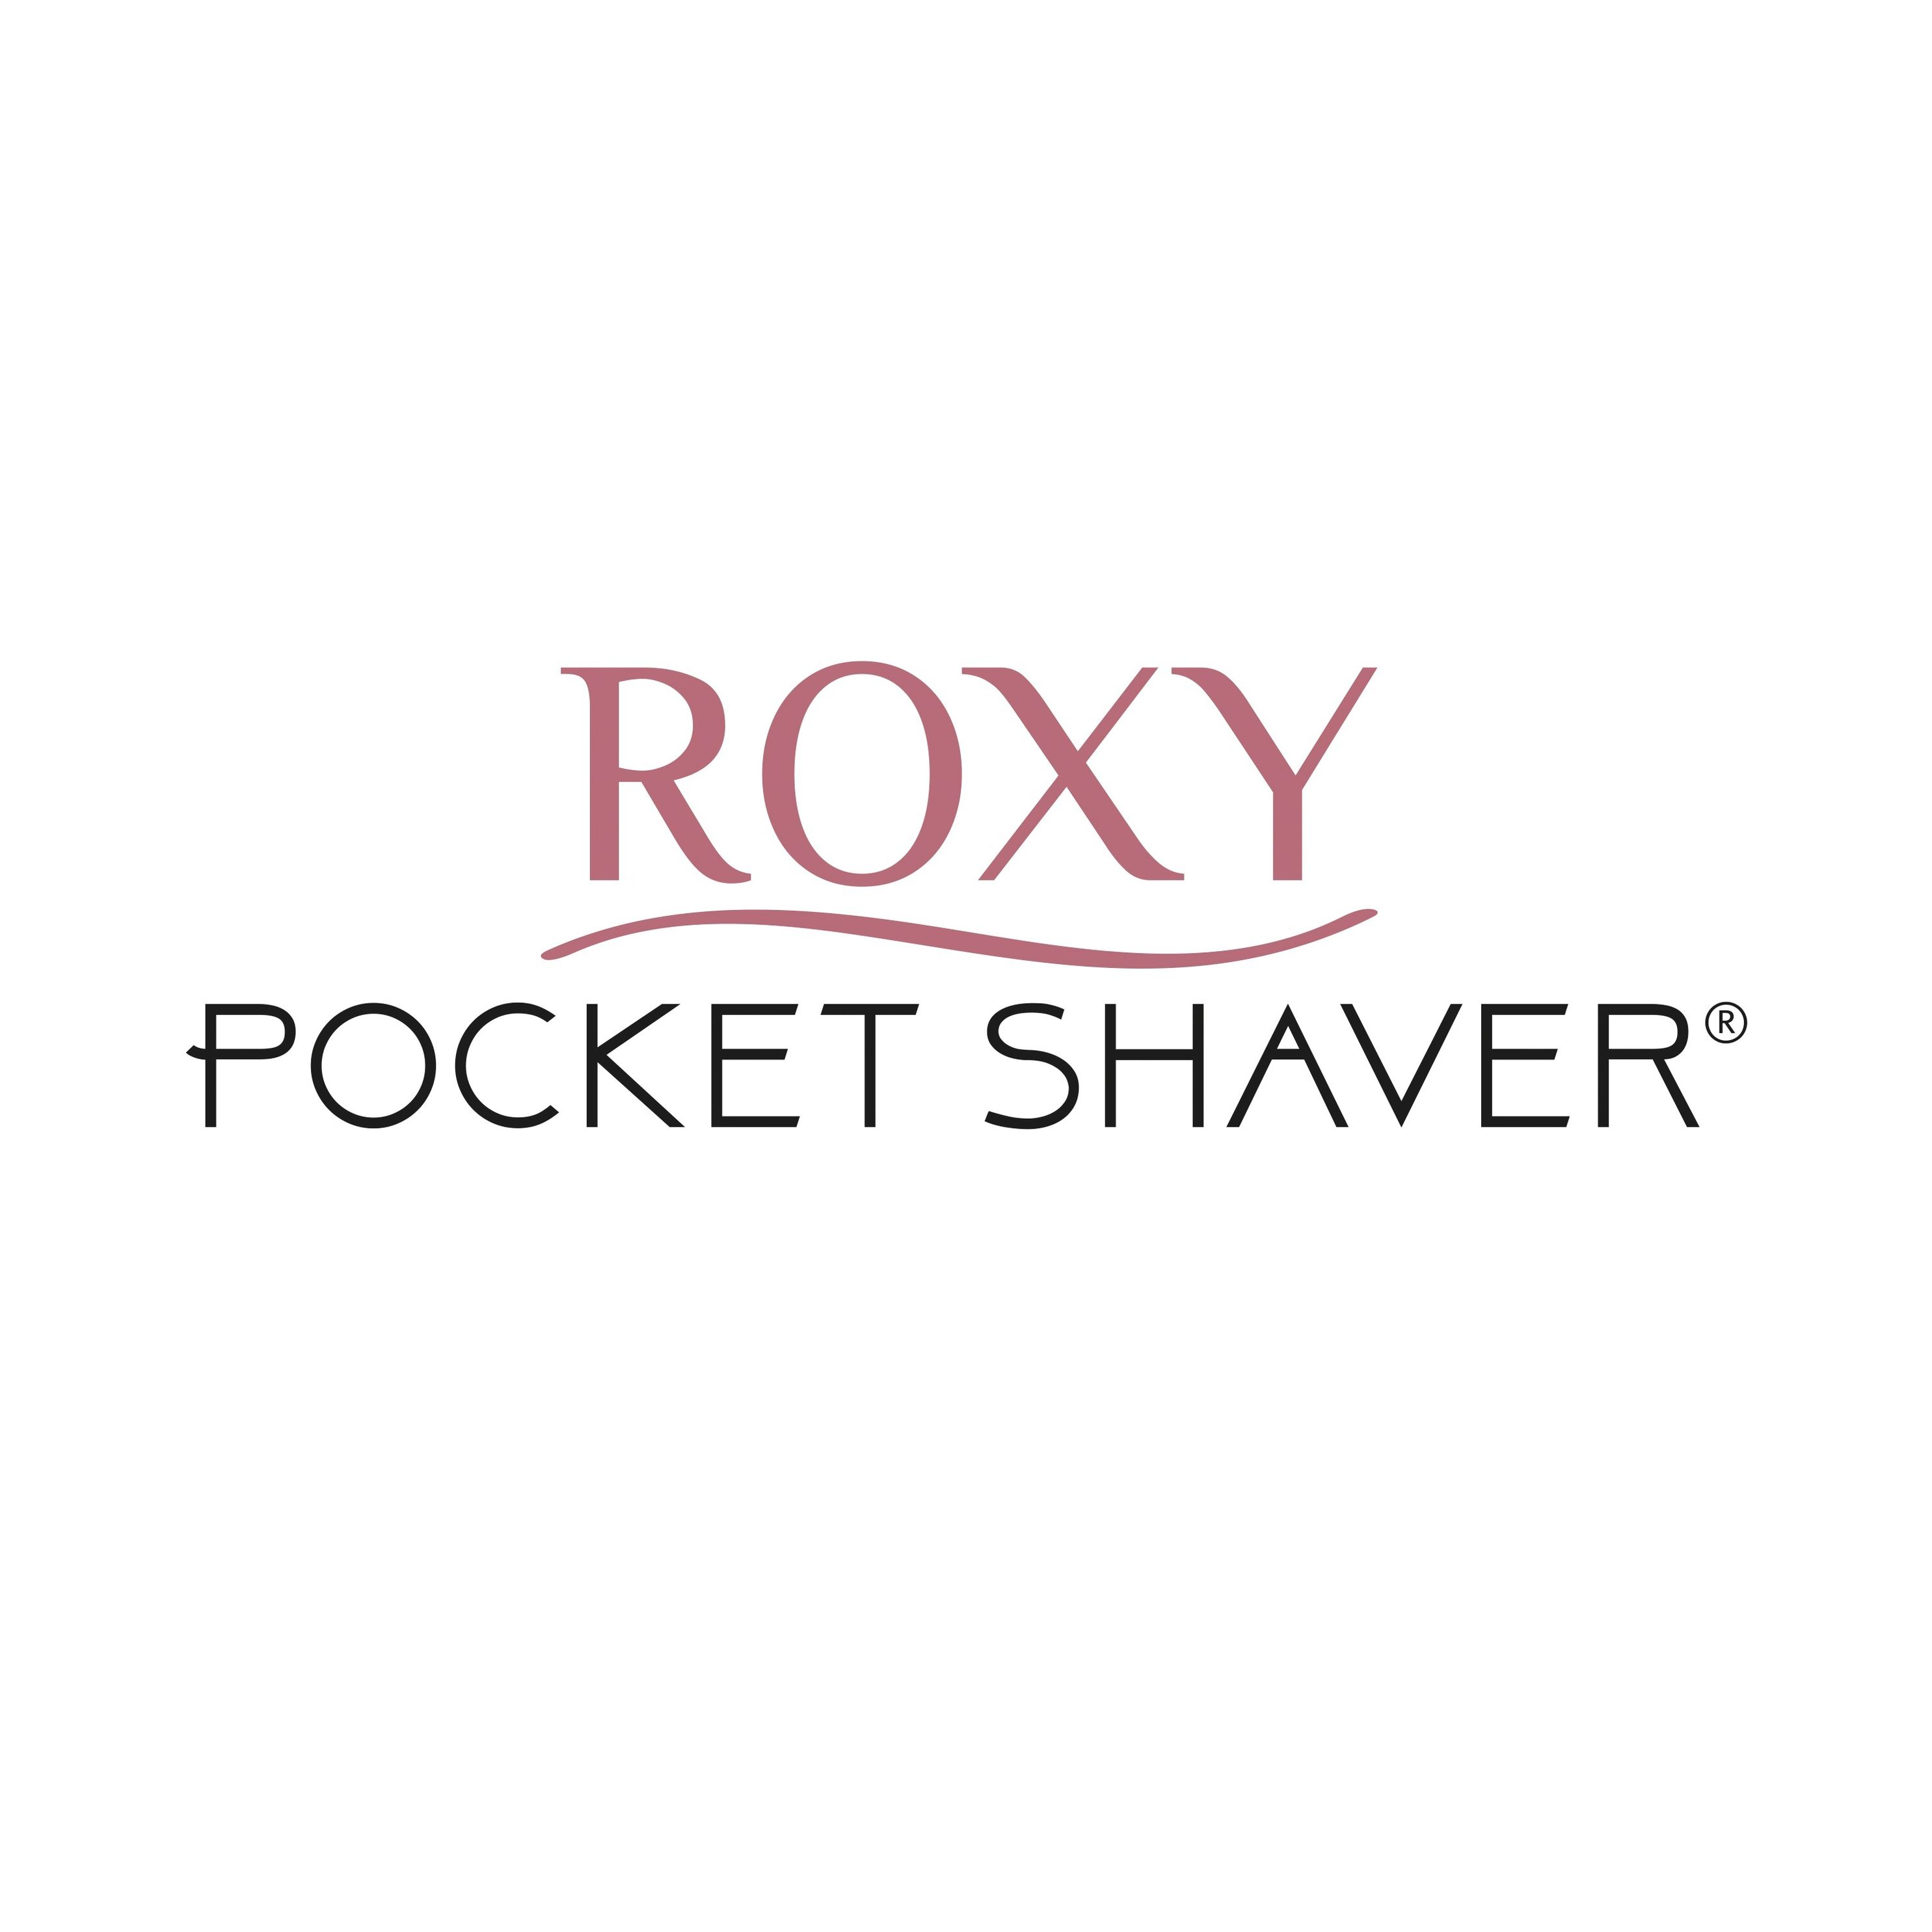 Kommentare zu Roxy Pocket Shaver - Weltbild.de